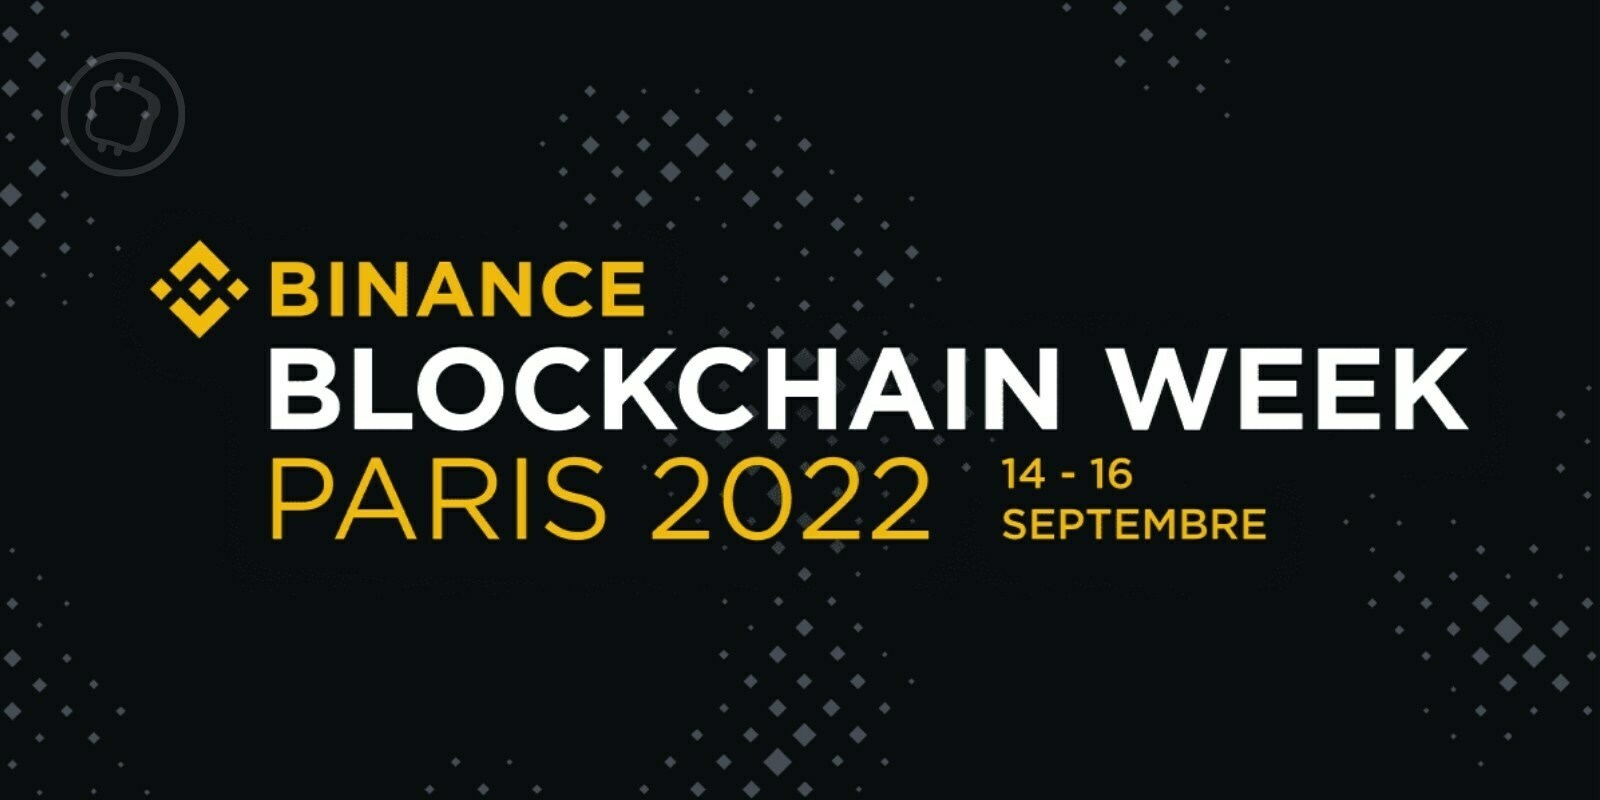 Paris accueillera la Binance Blockchain Week du 14 au 16 septembre prochain – Quel est le programme ?